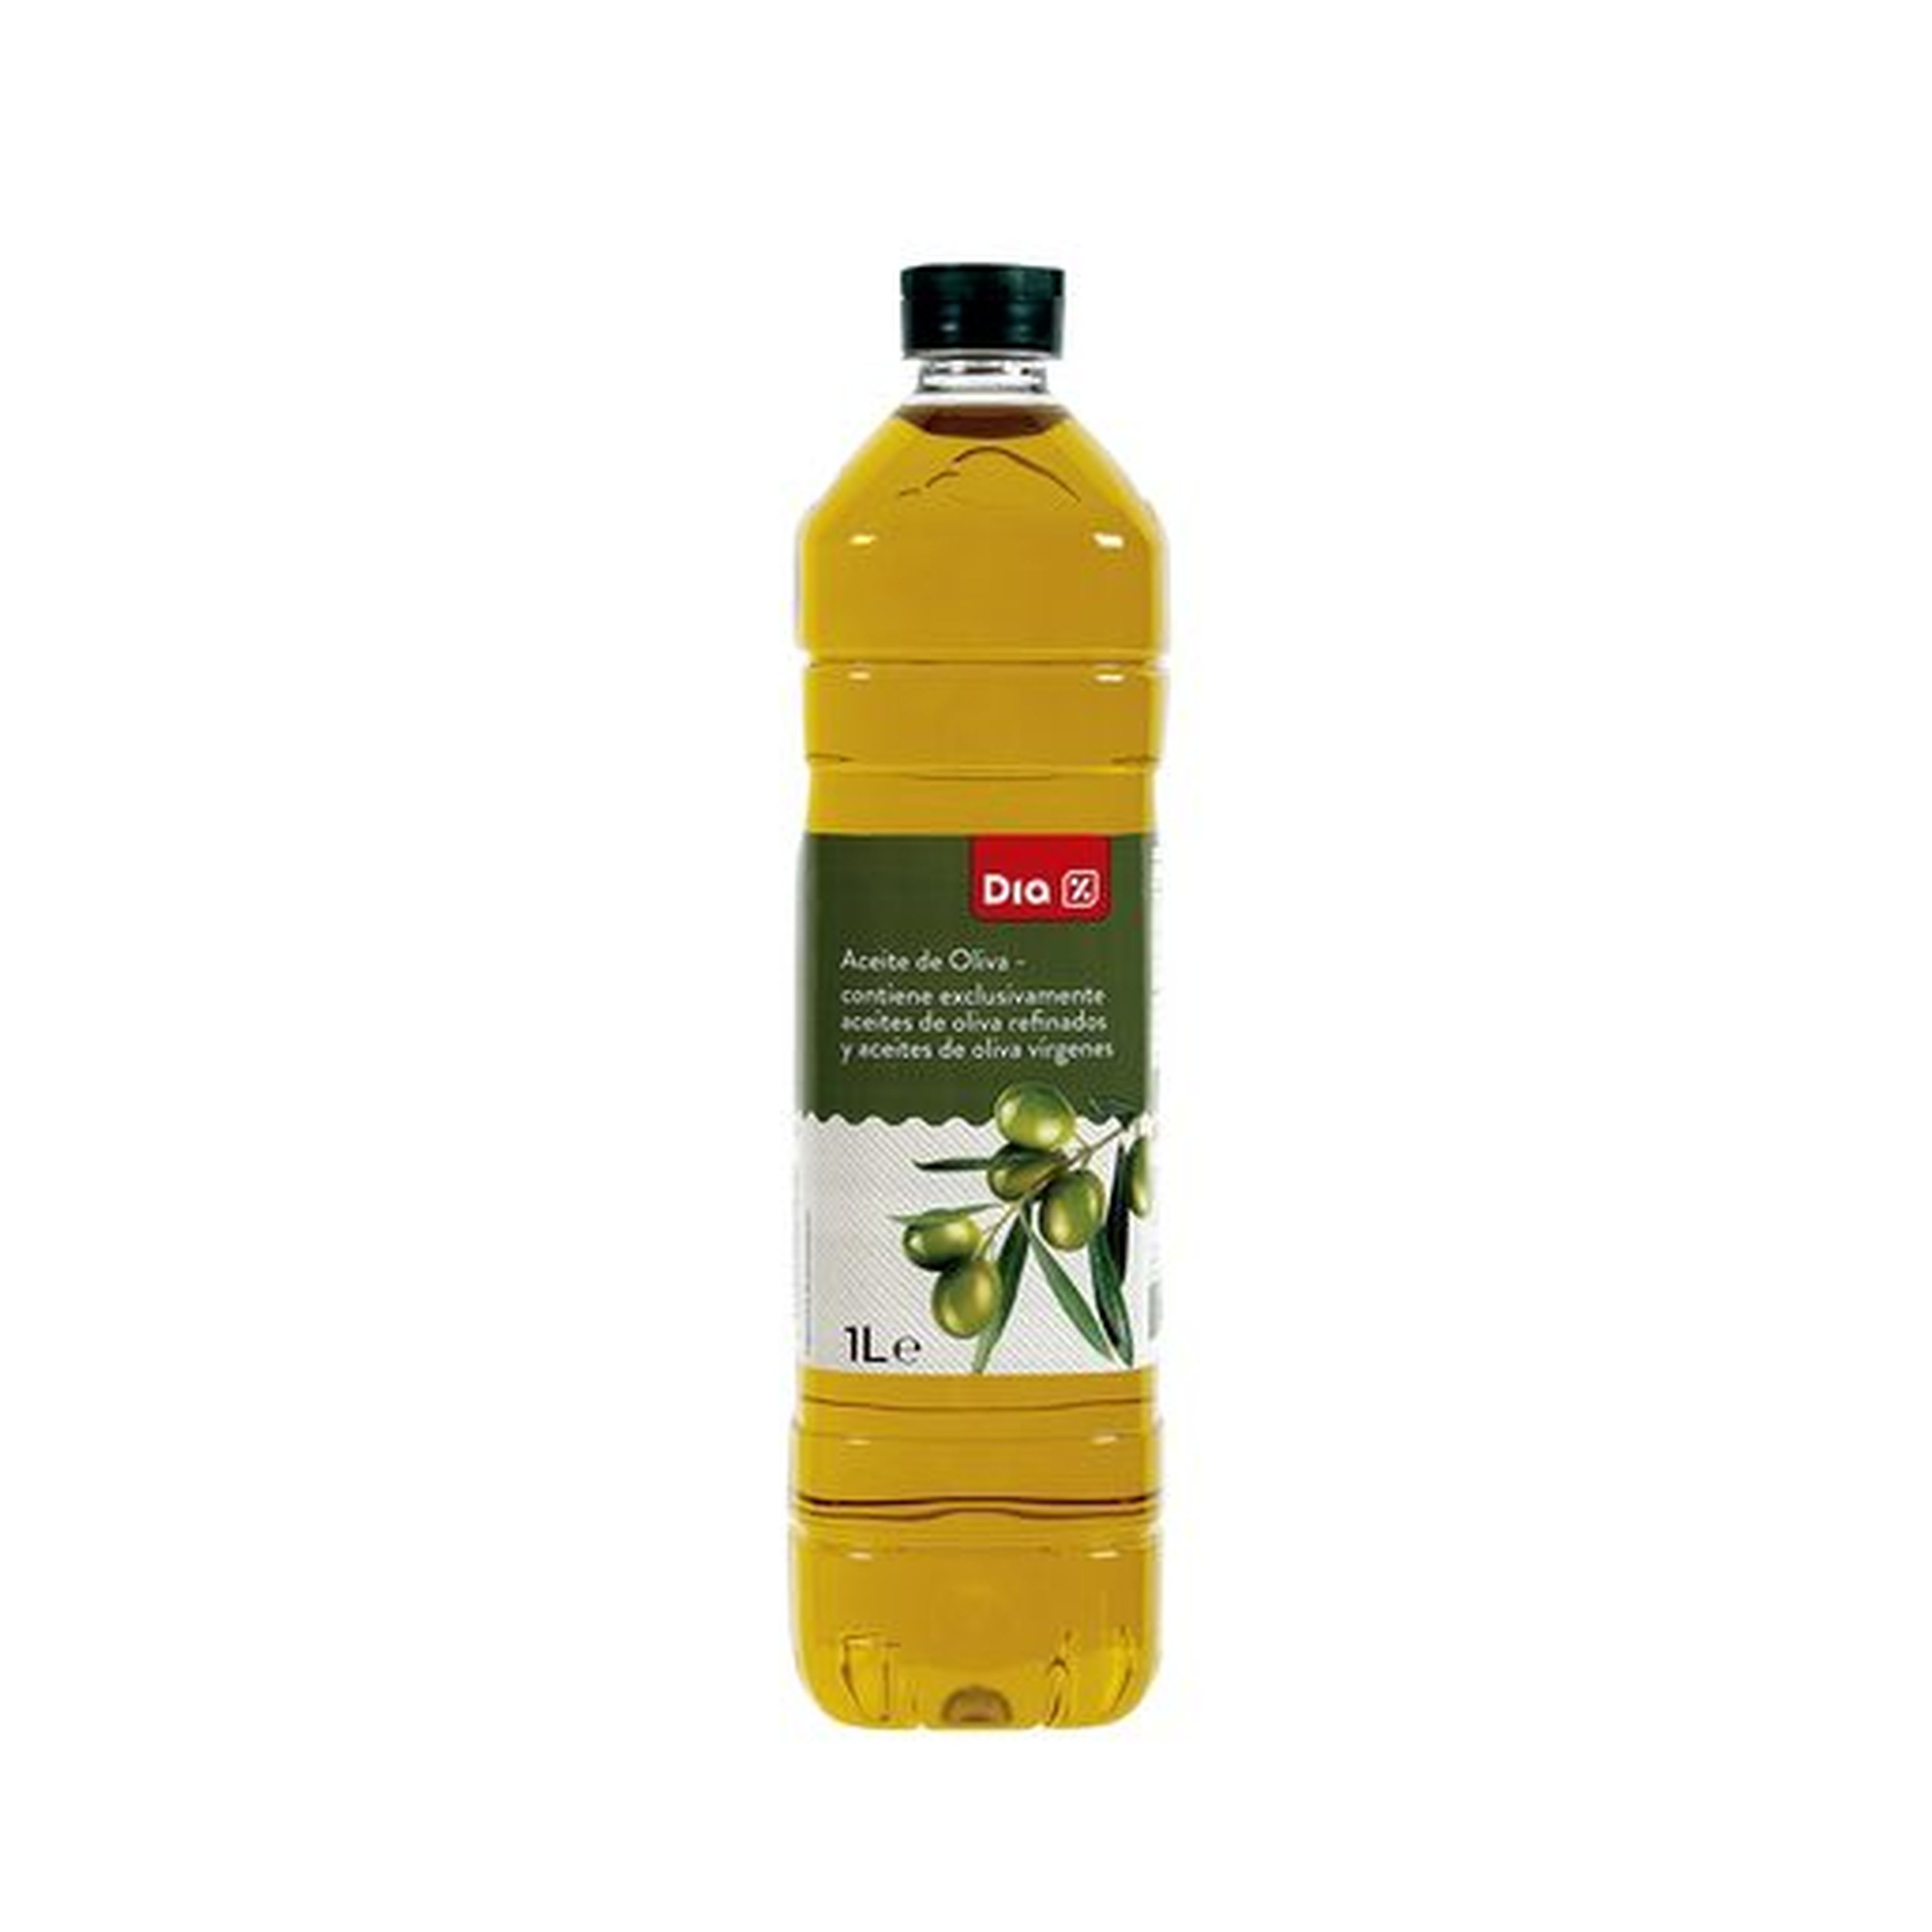 Aceite de oliva de Dia